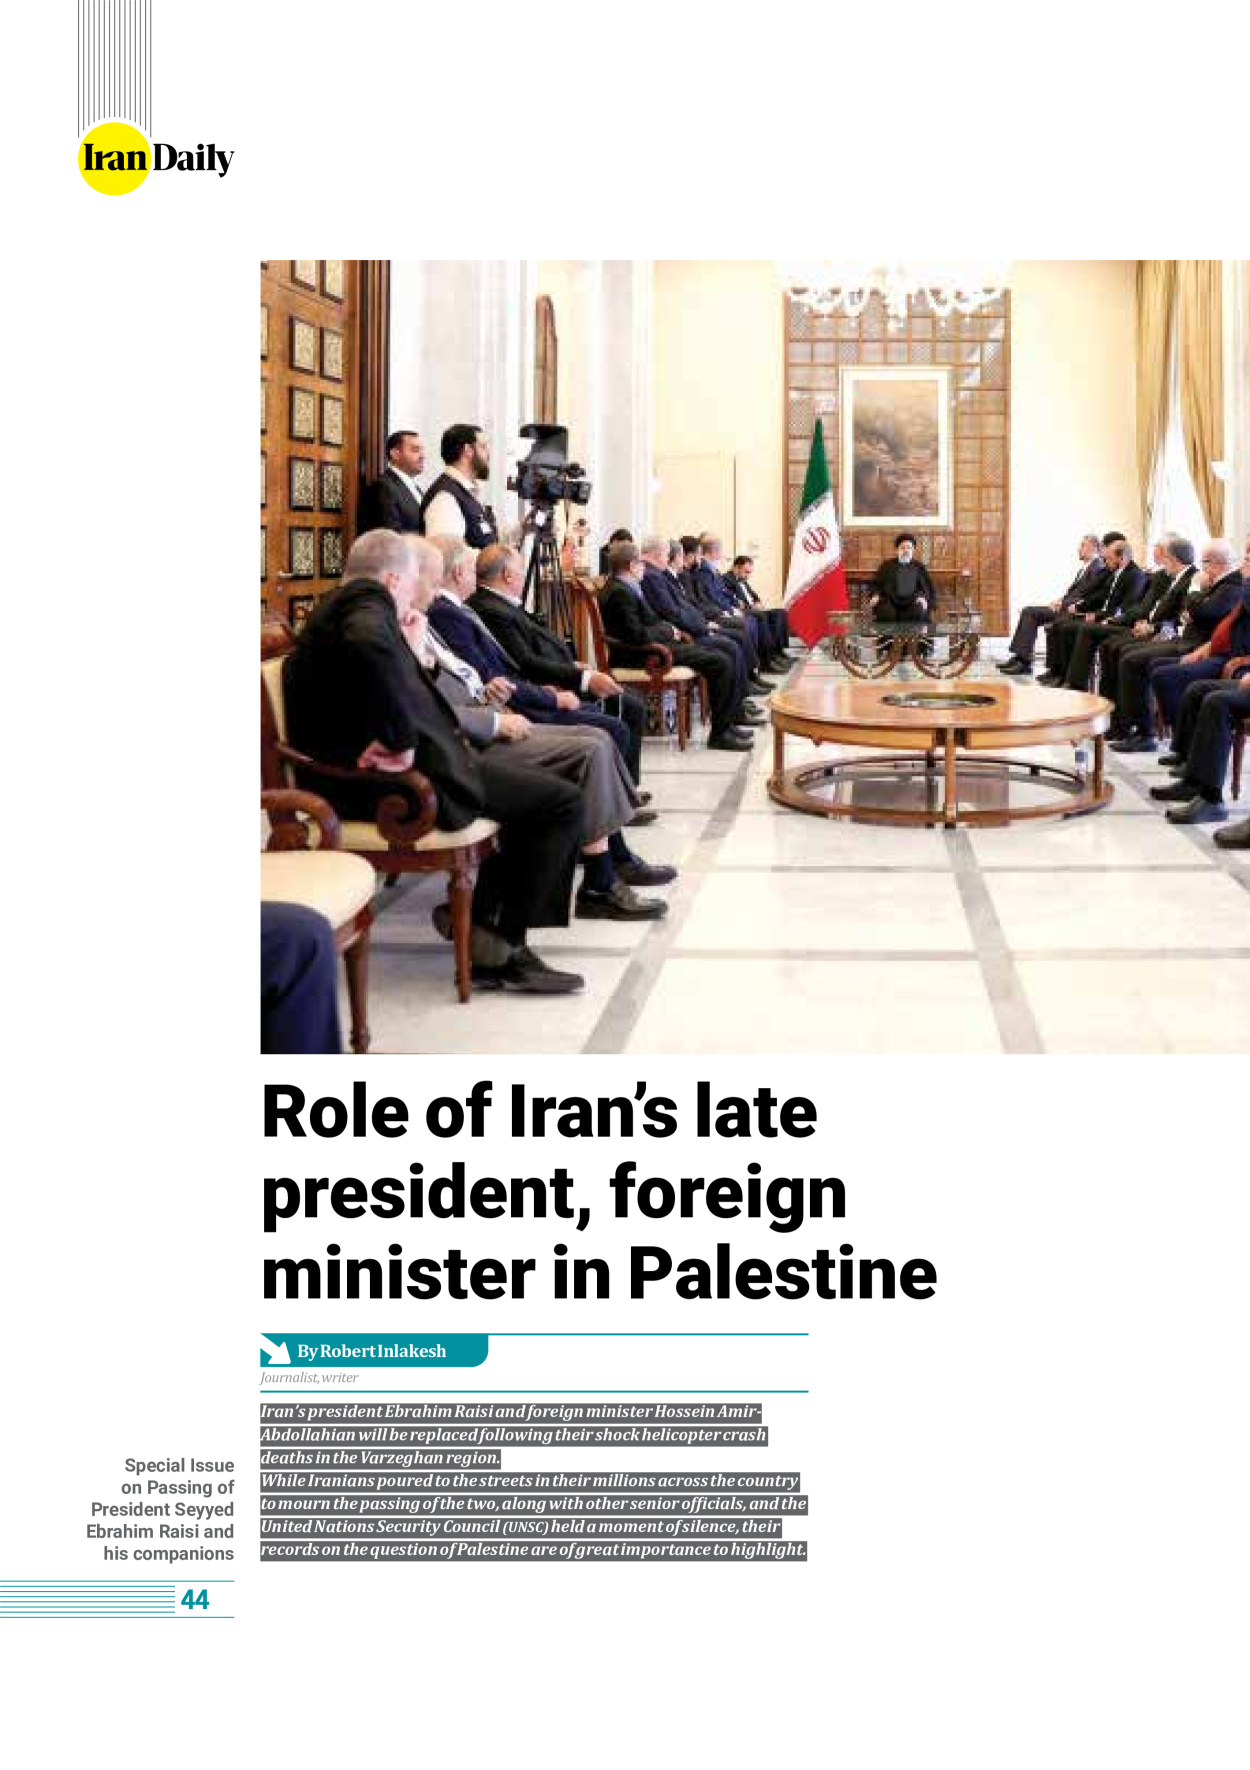 روزنامه ایران - ویژه نامه وِزه نامه چهلم شهید رییسی( انگلیسی) - ۱۷ تیر ۱۴۰۳ - صفحه ۴۴